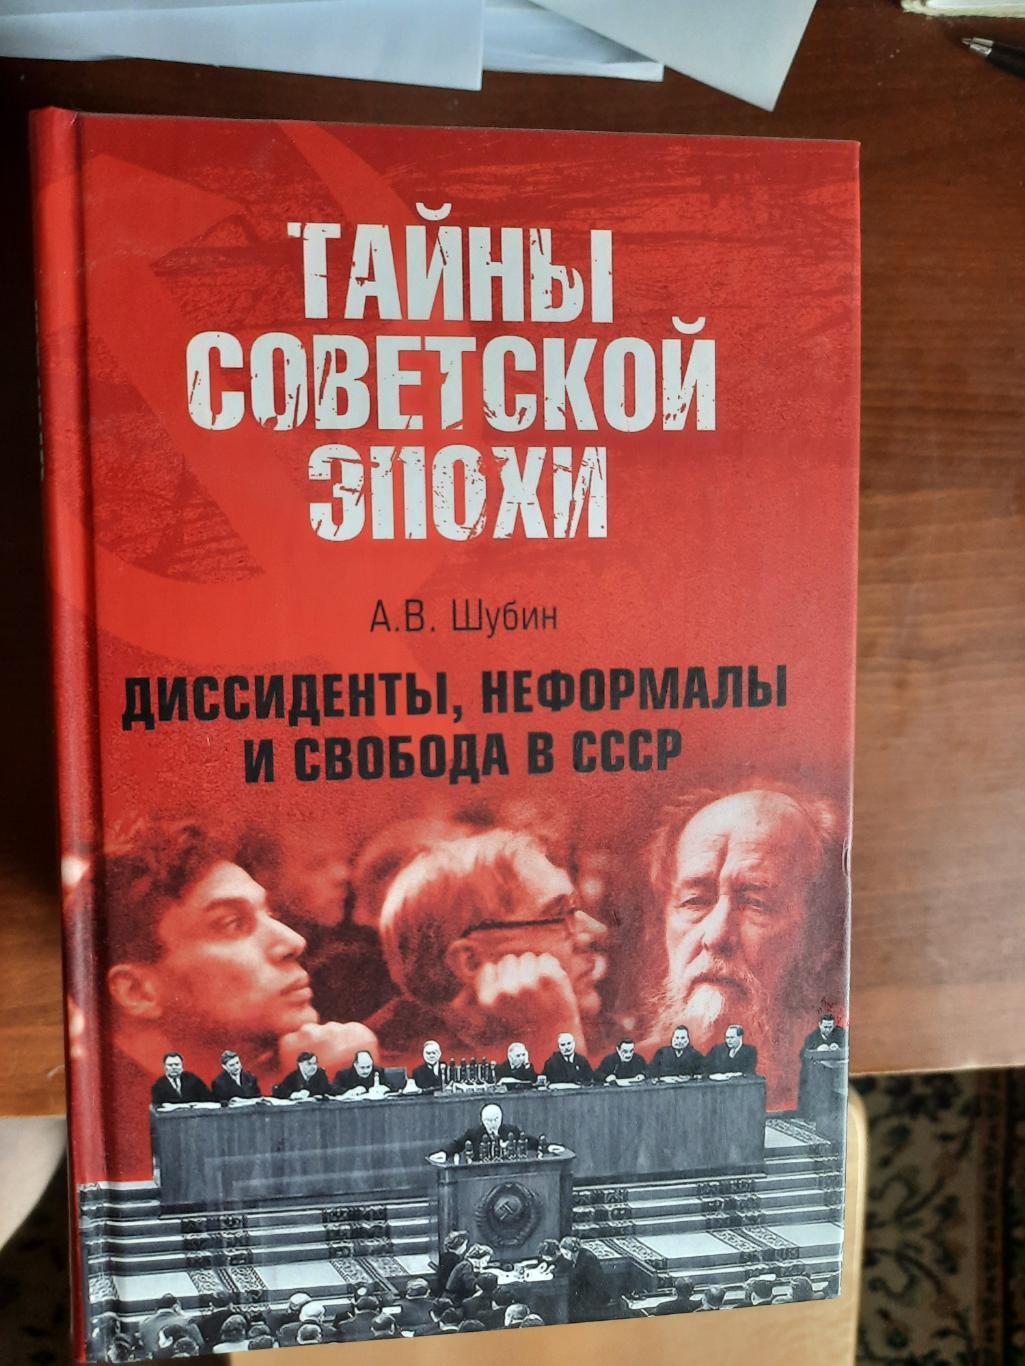 Диссиденты, неформалы и свобода в СССР (серия Тайны советской эпохи)